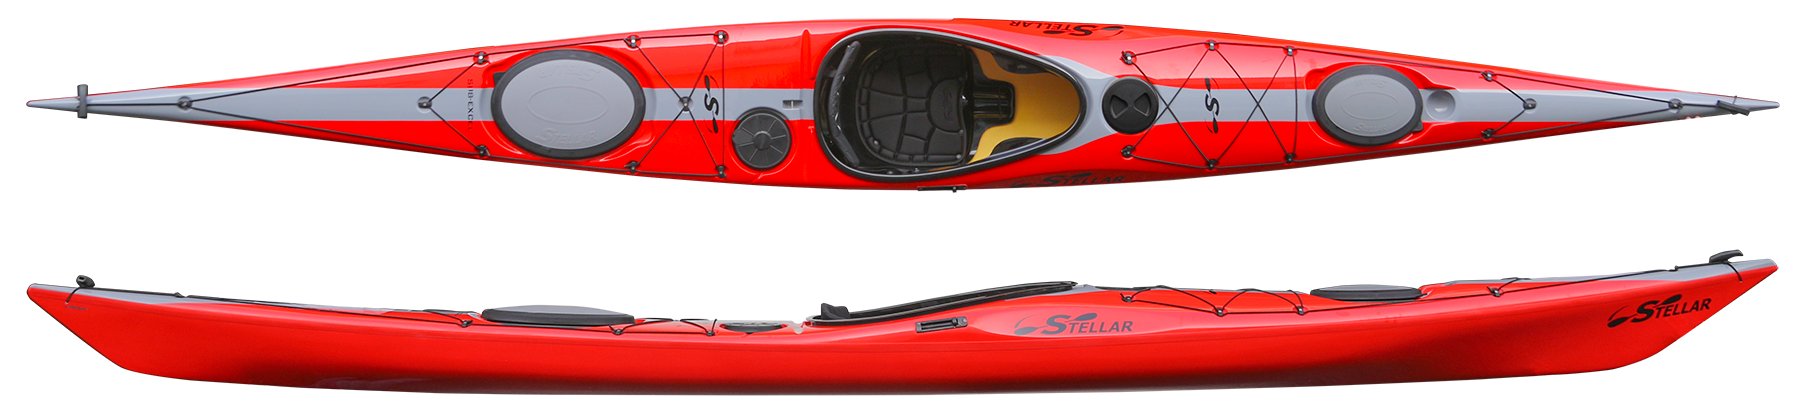 Kayaks: SI18 by Stellar Kayaks - Image 4705